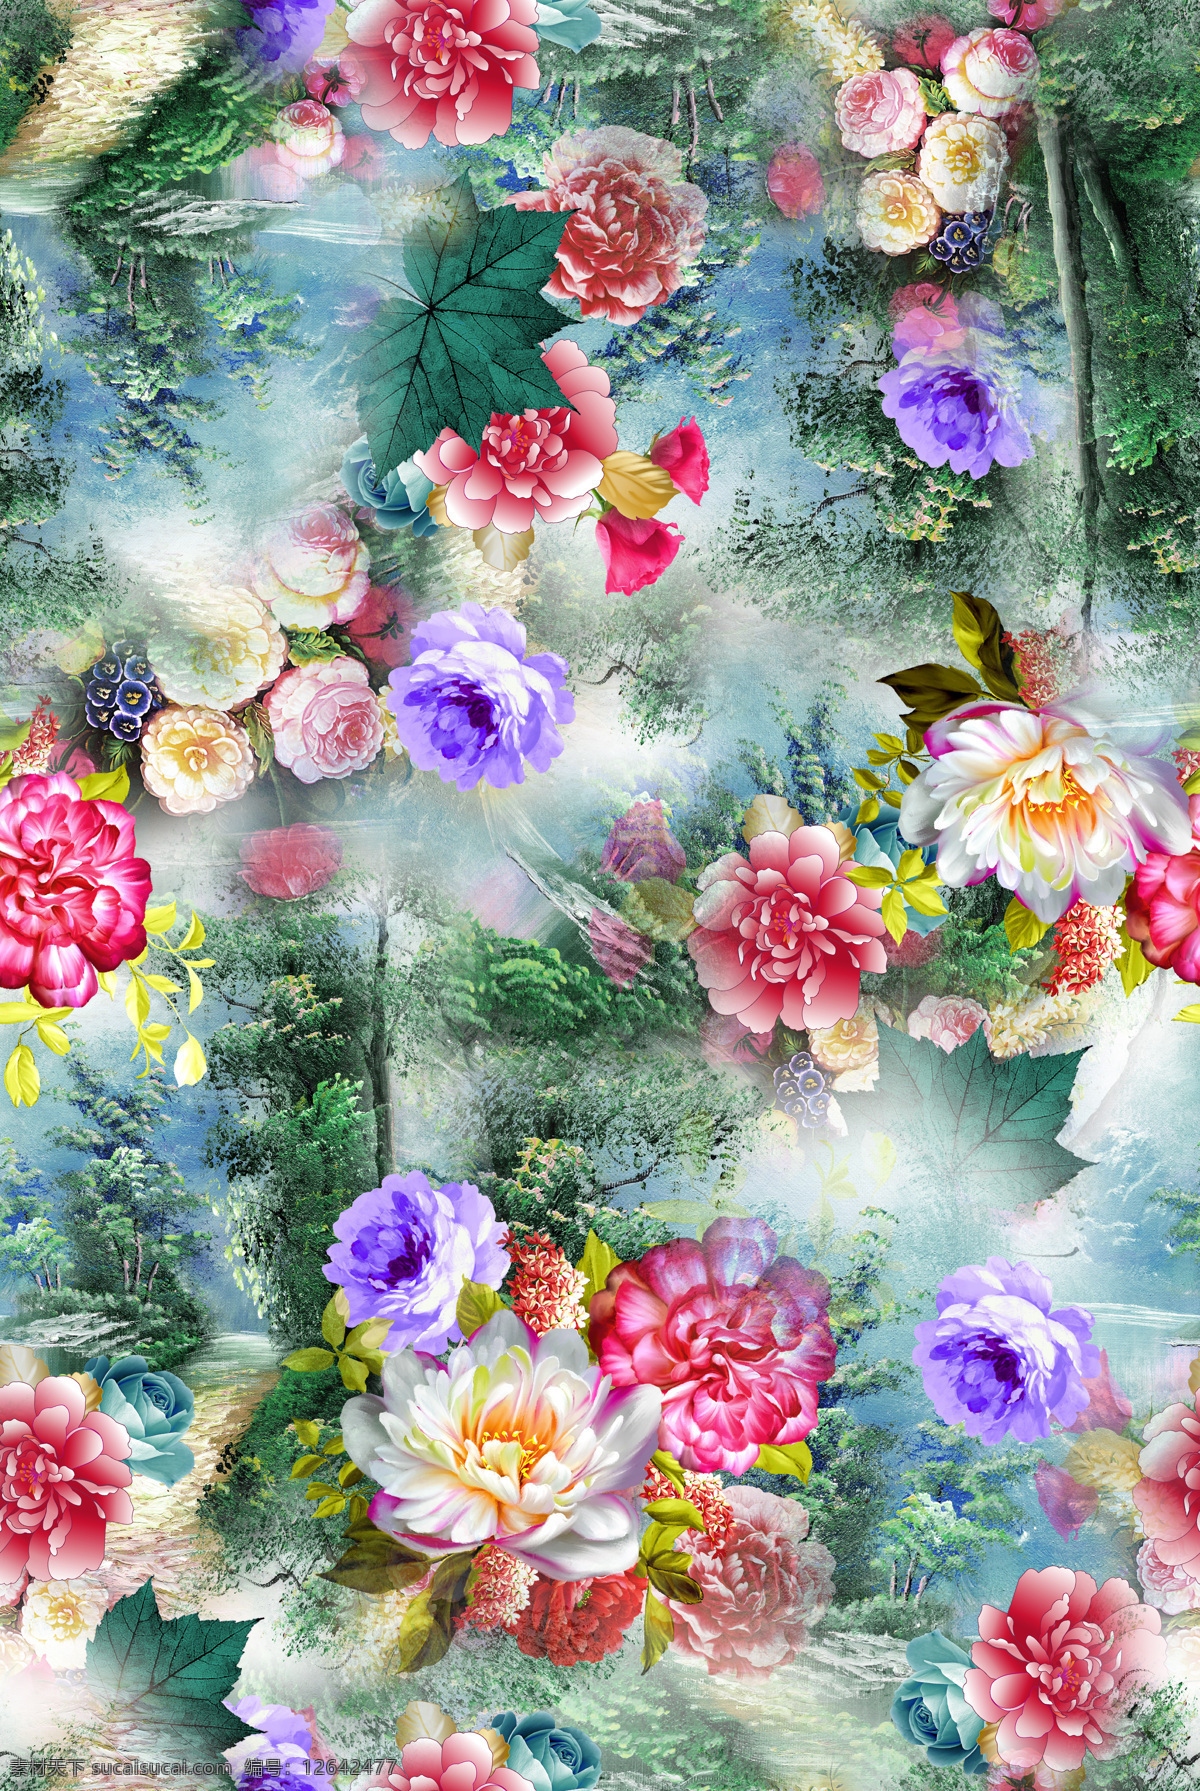 数码印花 中国风 印花图 服装图案 旗袍 花朵 风景 回位 四方连续 复古 原创 服装 数码 花型 服装设计